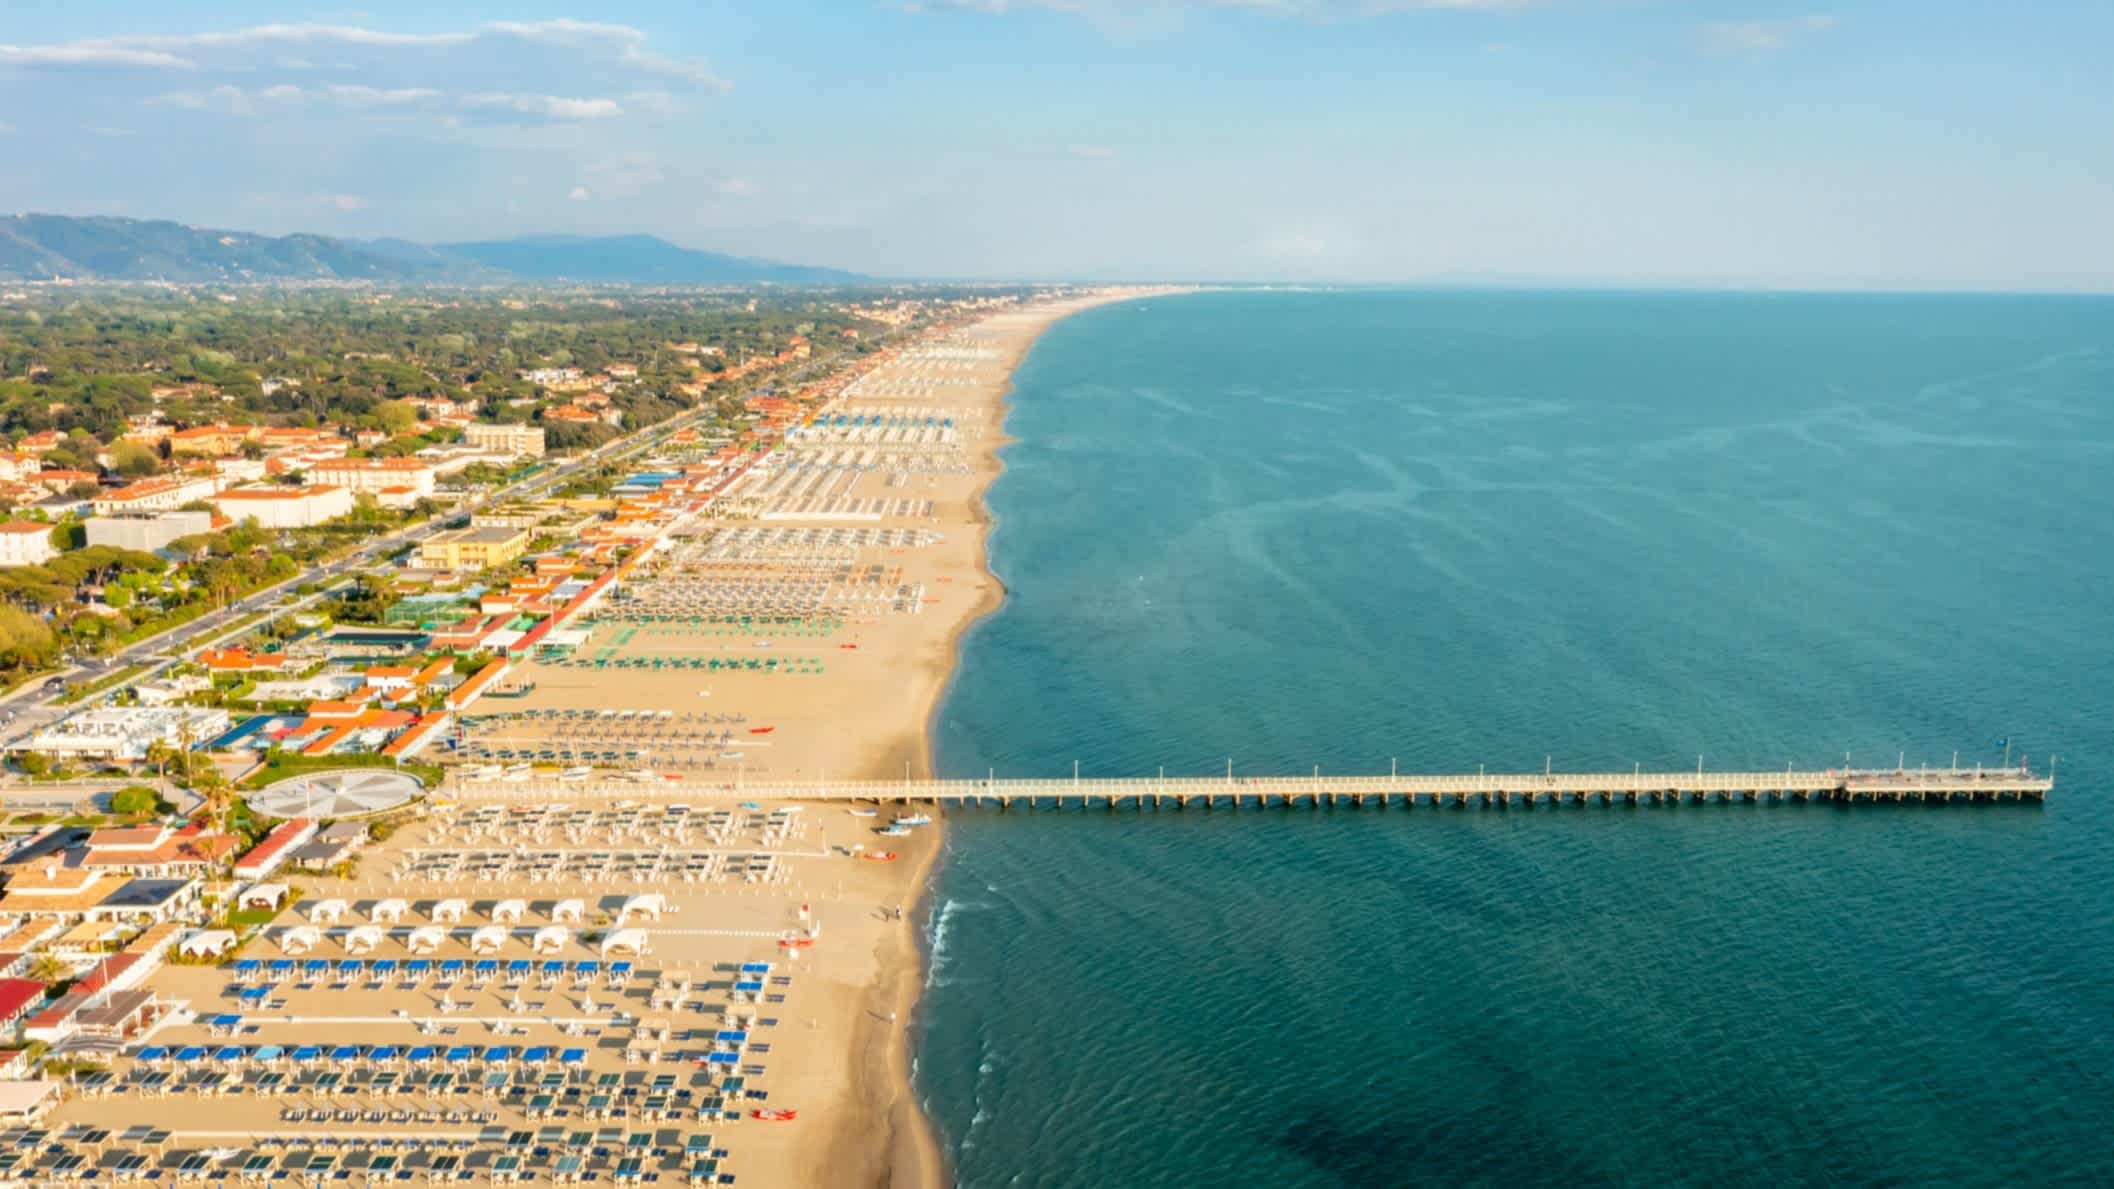 Die Aussicht aus der Luft auf den Forte dei Marmi Pier, Toskana, Italien, das Meer sowie die bebaute und gefüllte Küste.
